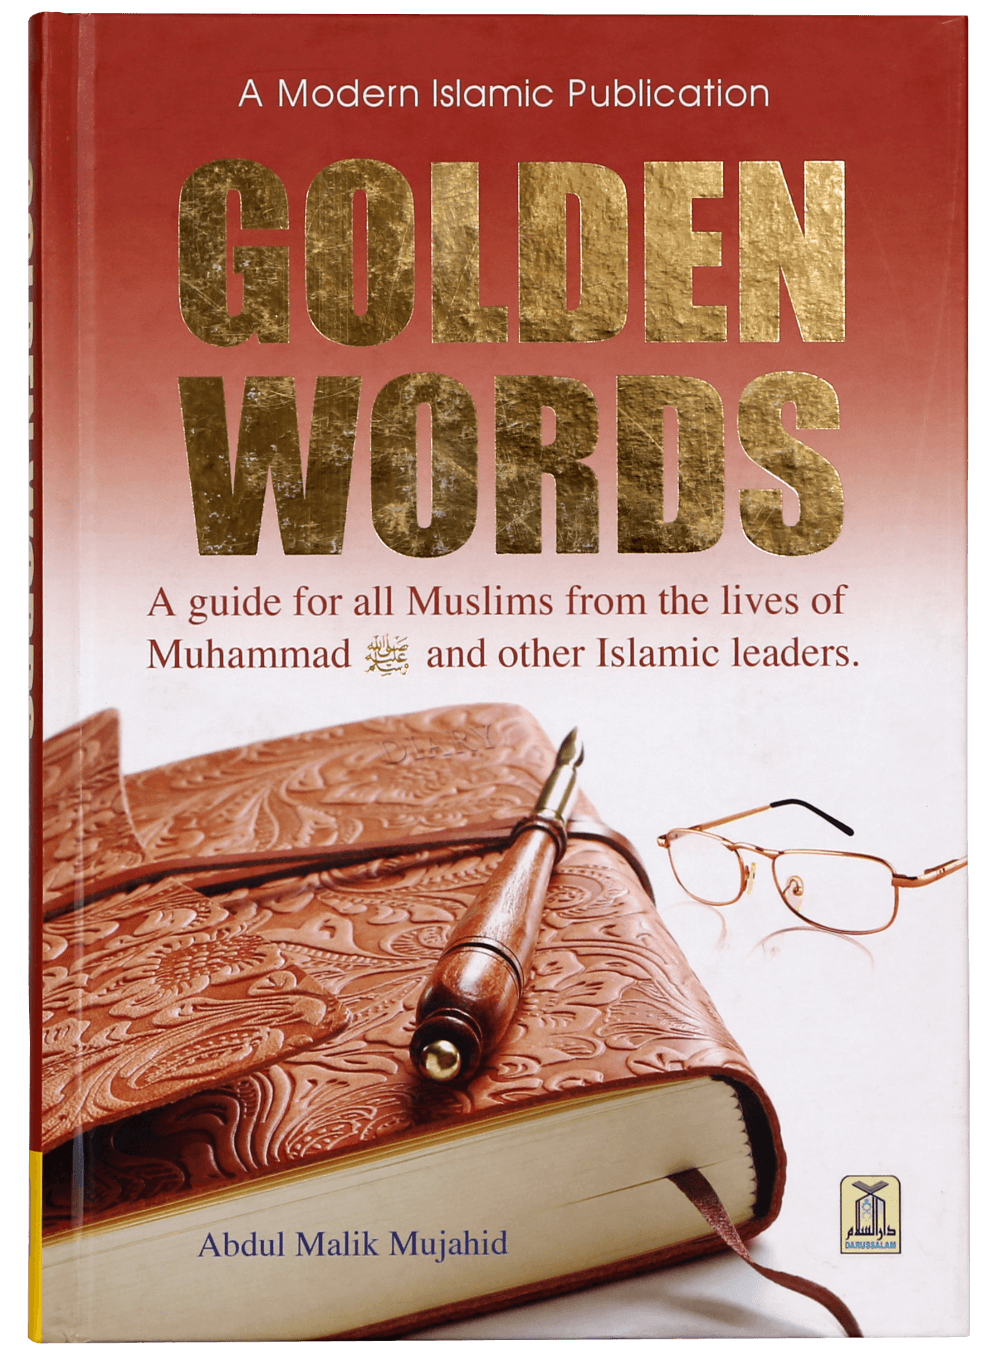 golden-words-darussalam-20180321-163608